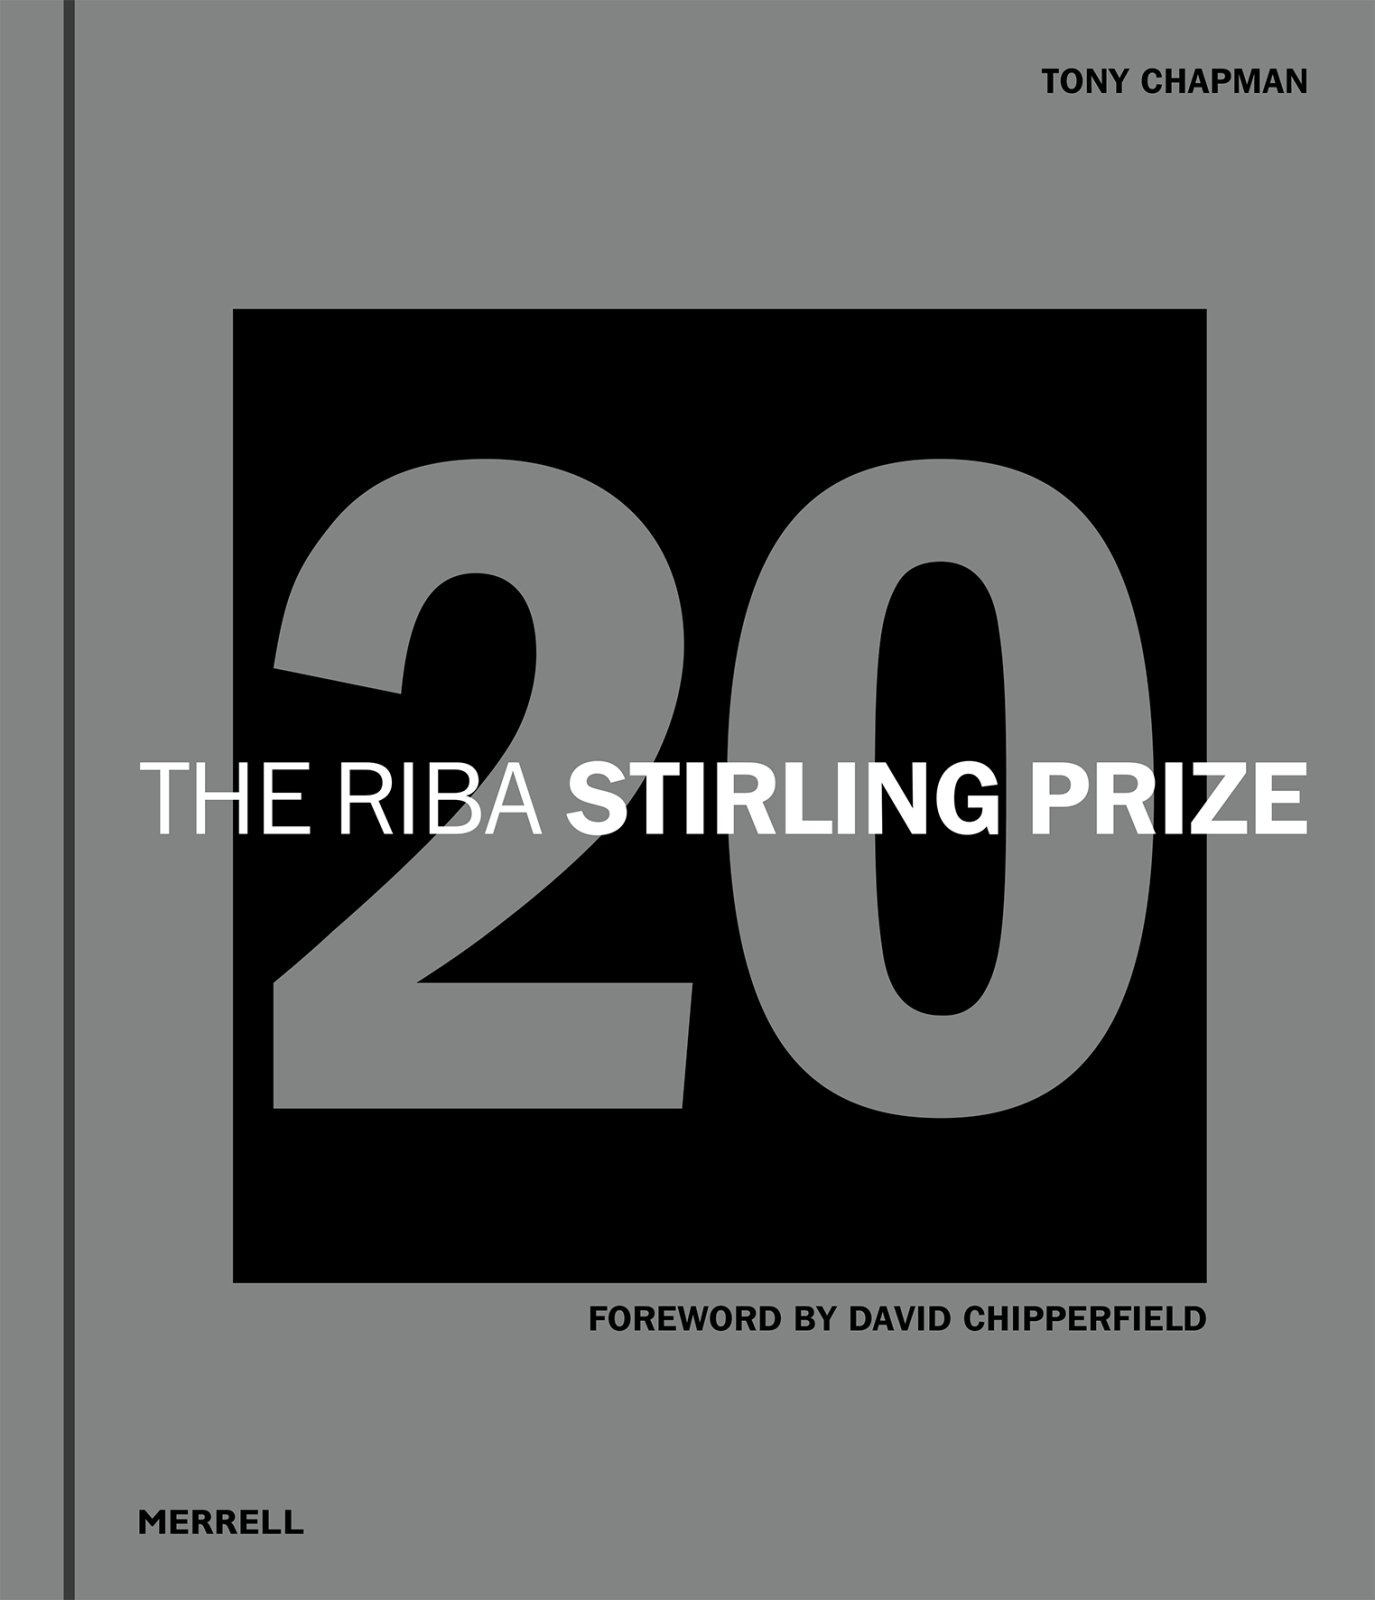 The RIBA Stirling Prize 20